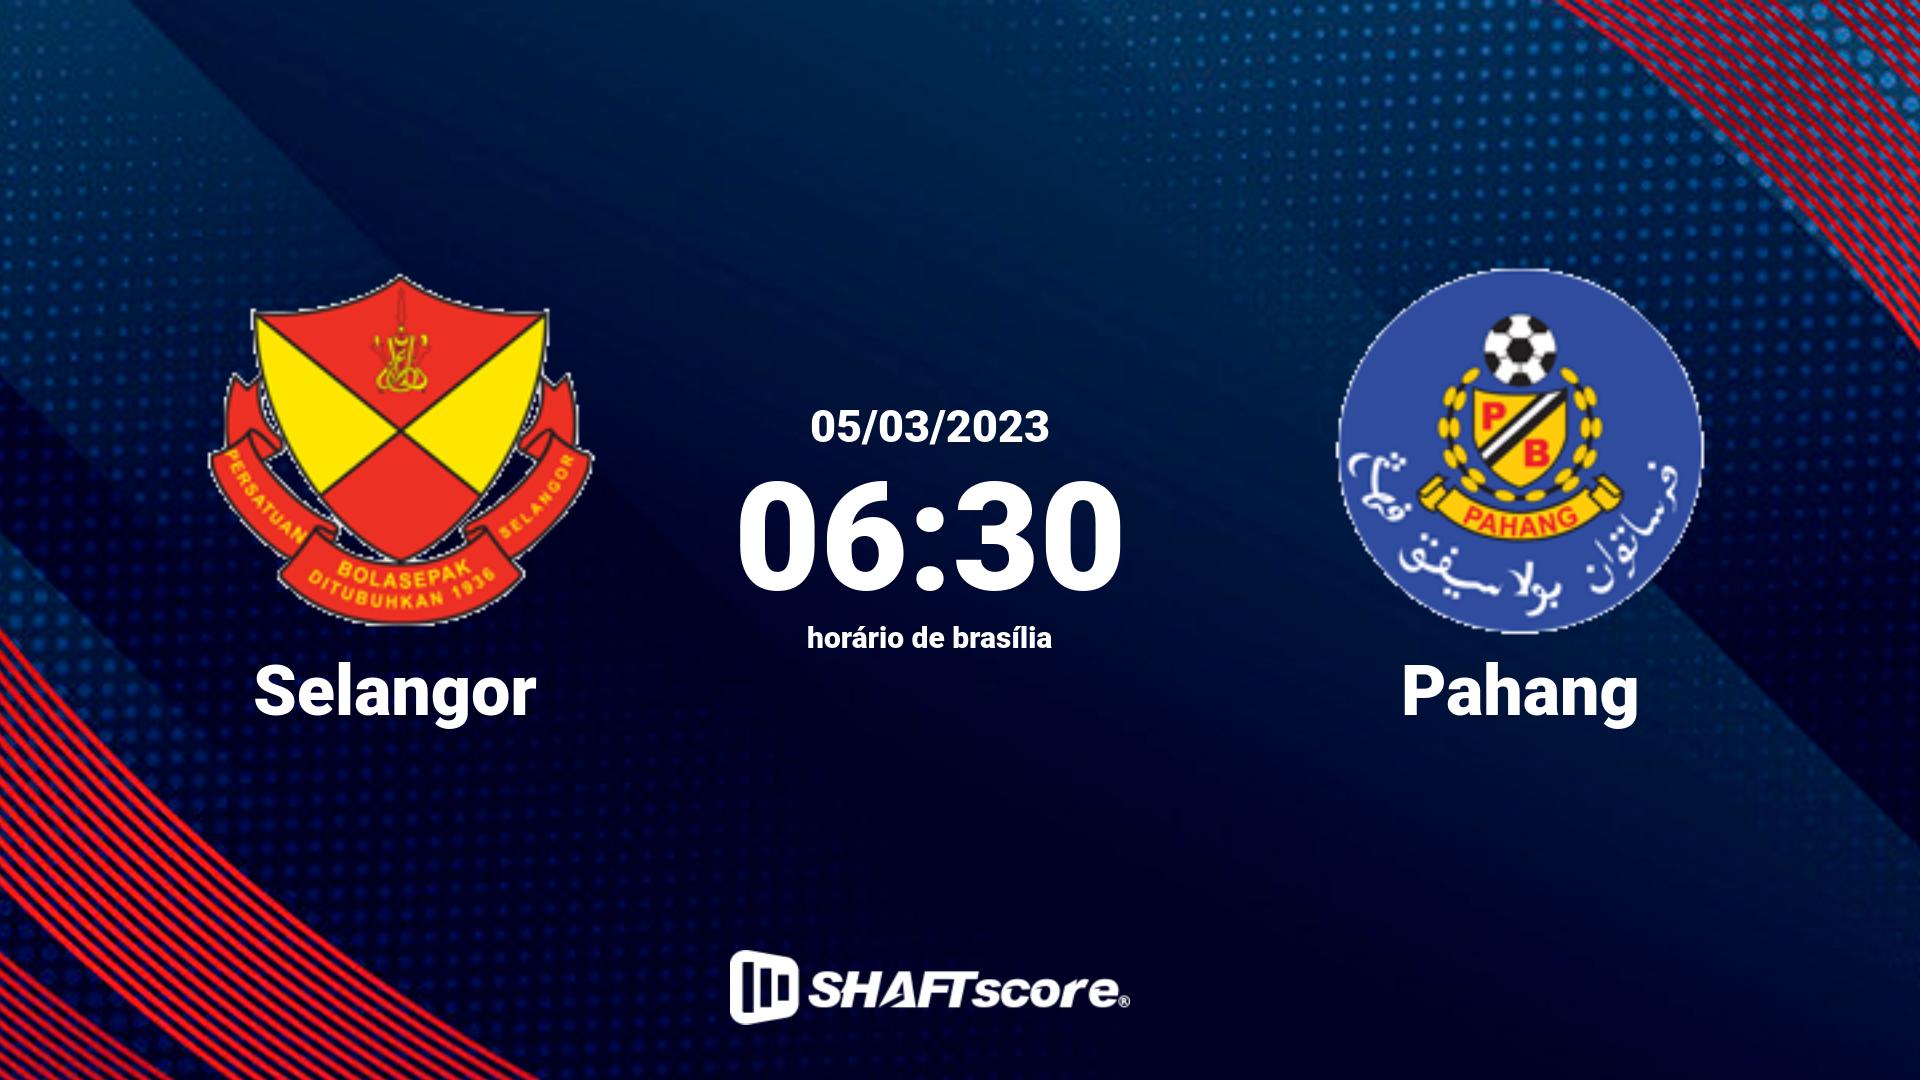 Estatísticas do jogo Selangor vs Pahang 05.03 06:30